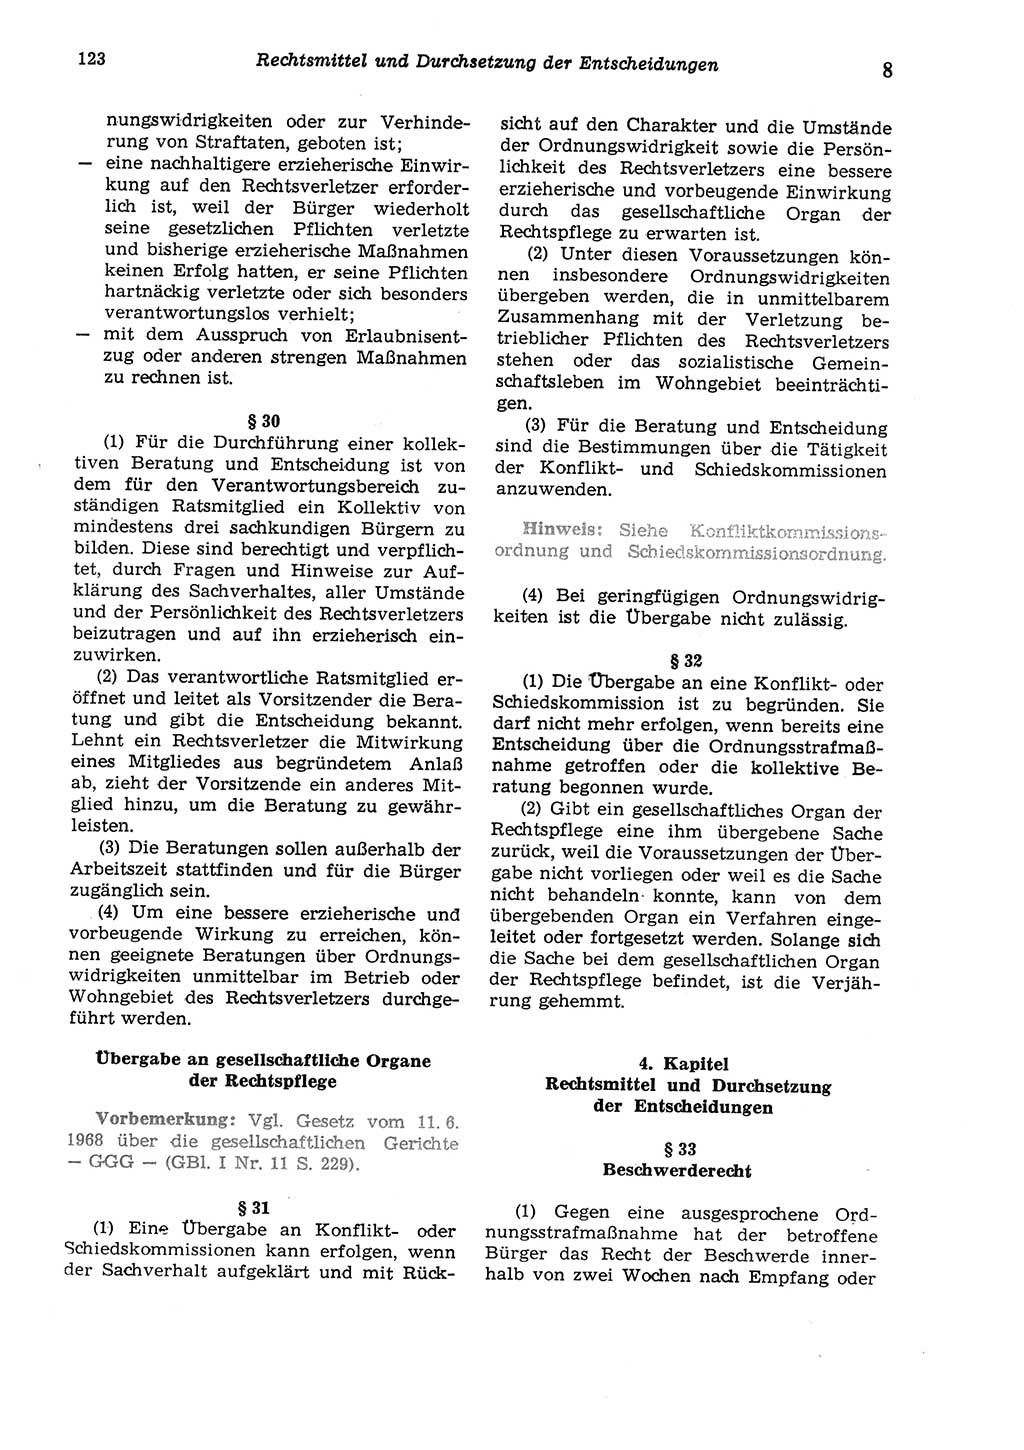 Strafgesetzbuch (StGB) der Deutschen Demokratischen Republik (DDR) und angrenzende Gesetze und Bestimmungen 1975, Seite 123 (StGB DDR Ges. Best. 1975, S. 123)